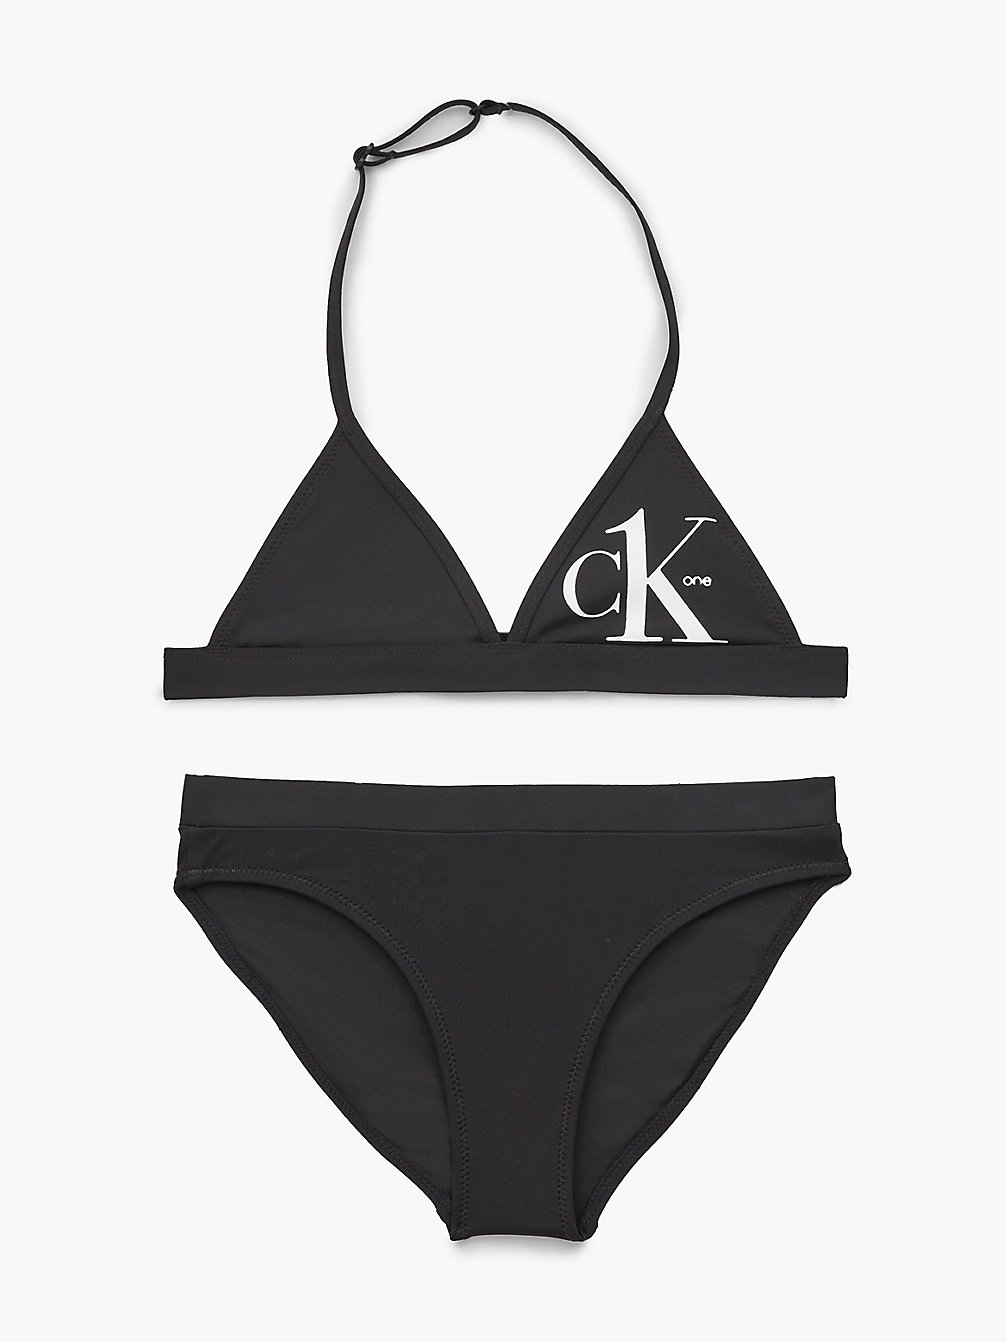 PVH BLACK > Bikini-Set Mit Triangel-Top Für Mädchen - CK One > undefined Maedchen - Calvin Klein